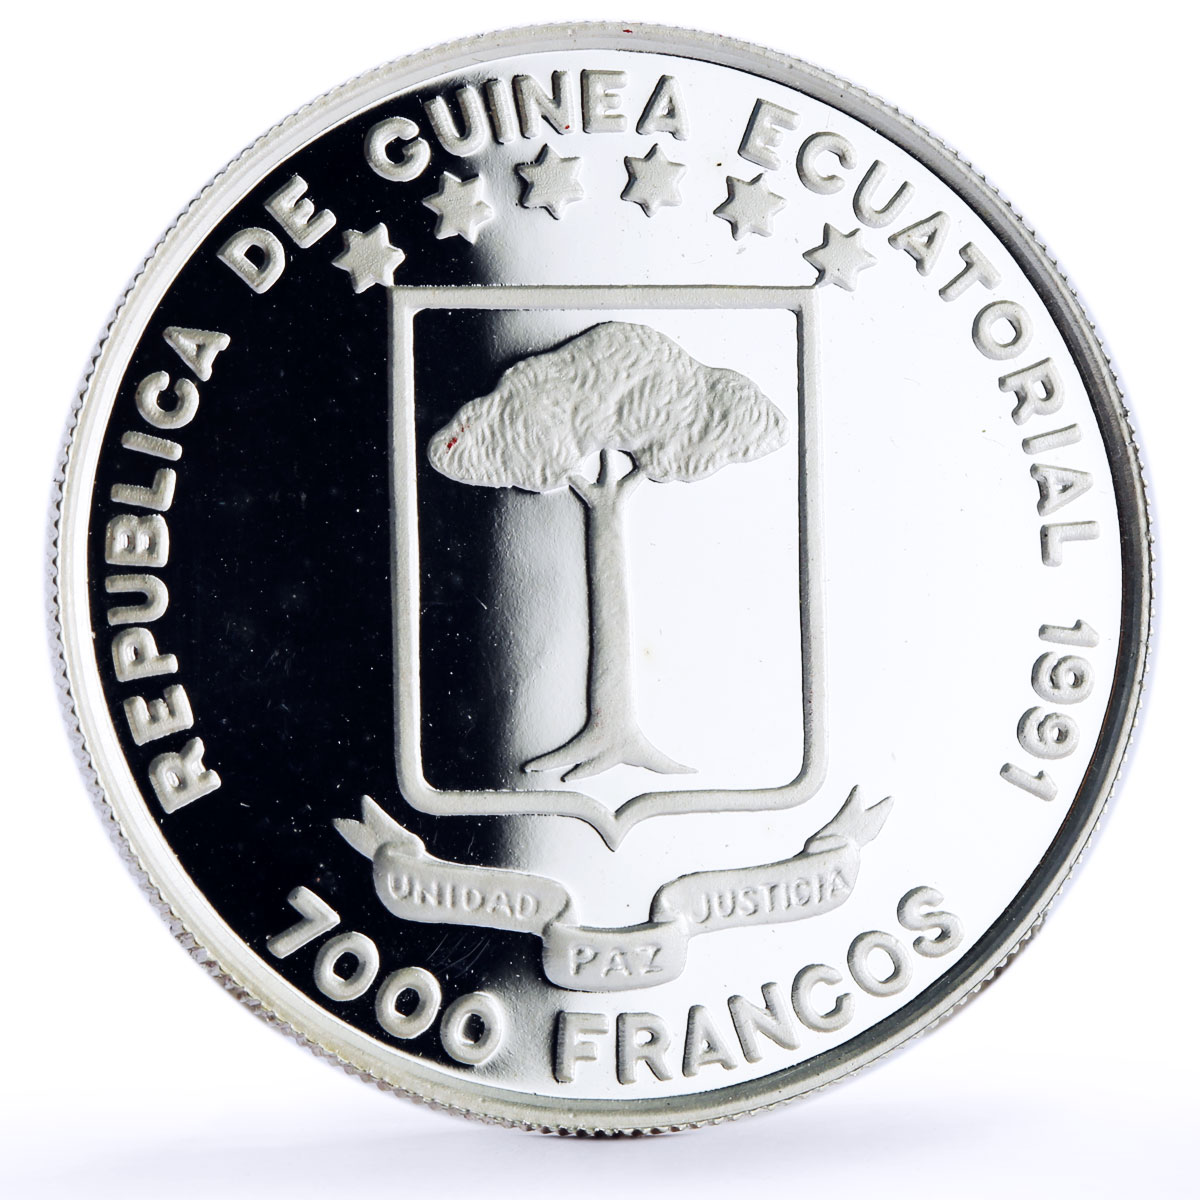 Equatorial Guinea 7000 francos Seville Expo Ship Shuttle proof silver coin 1991